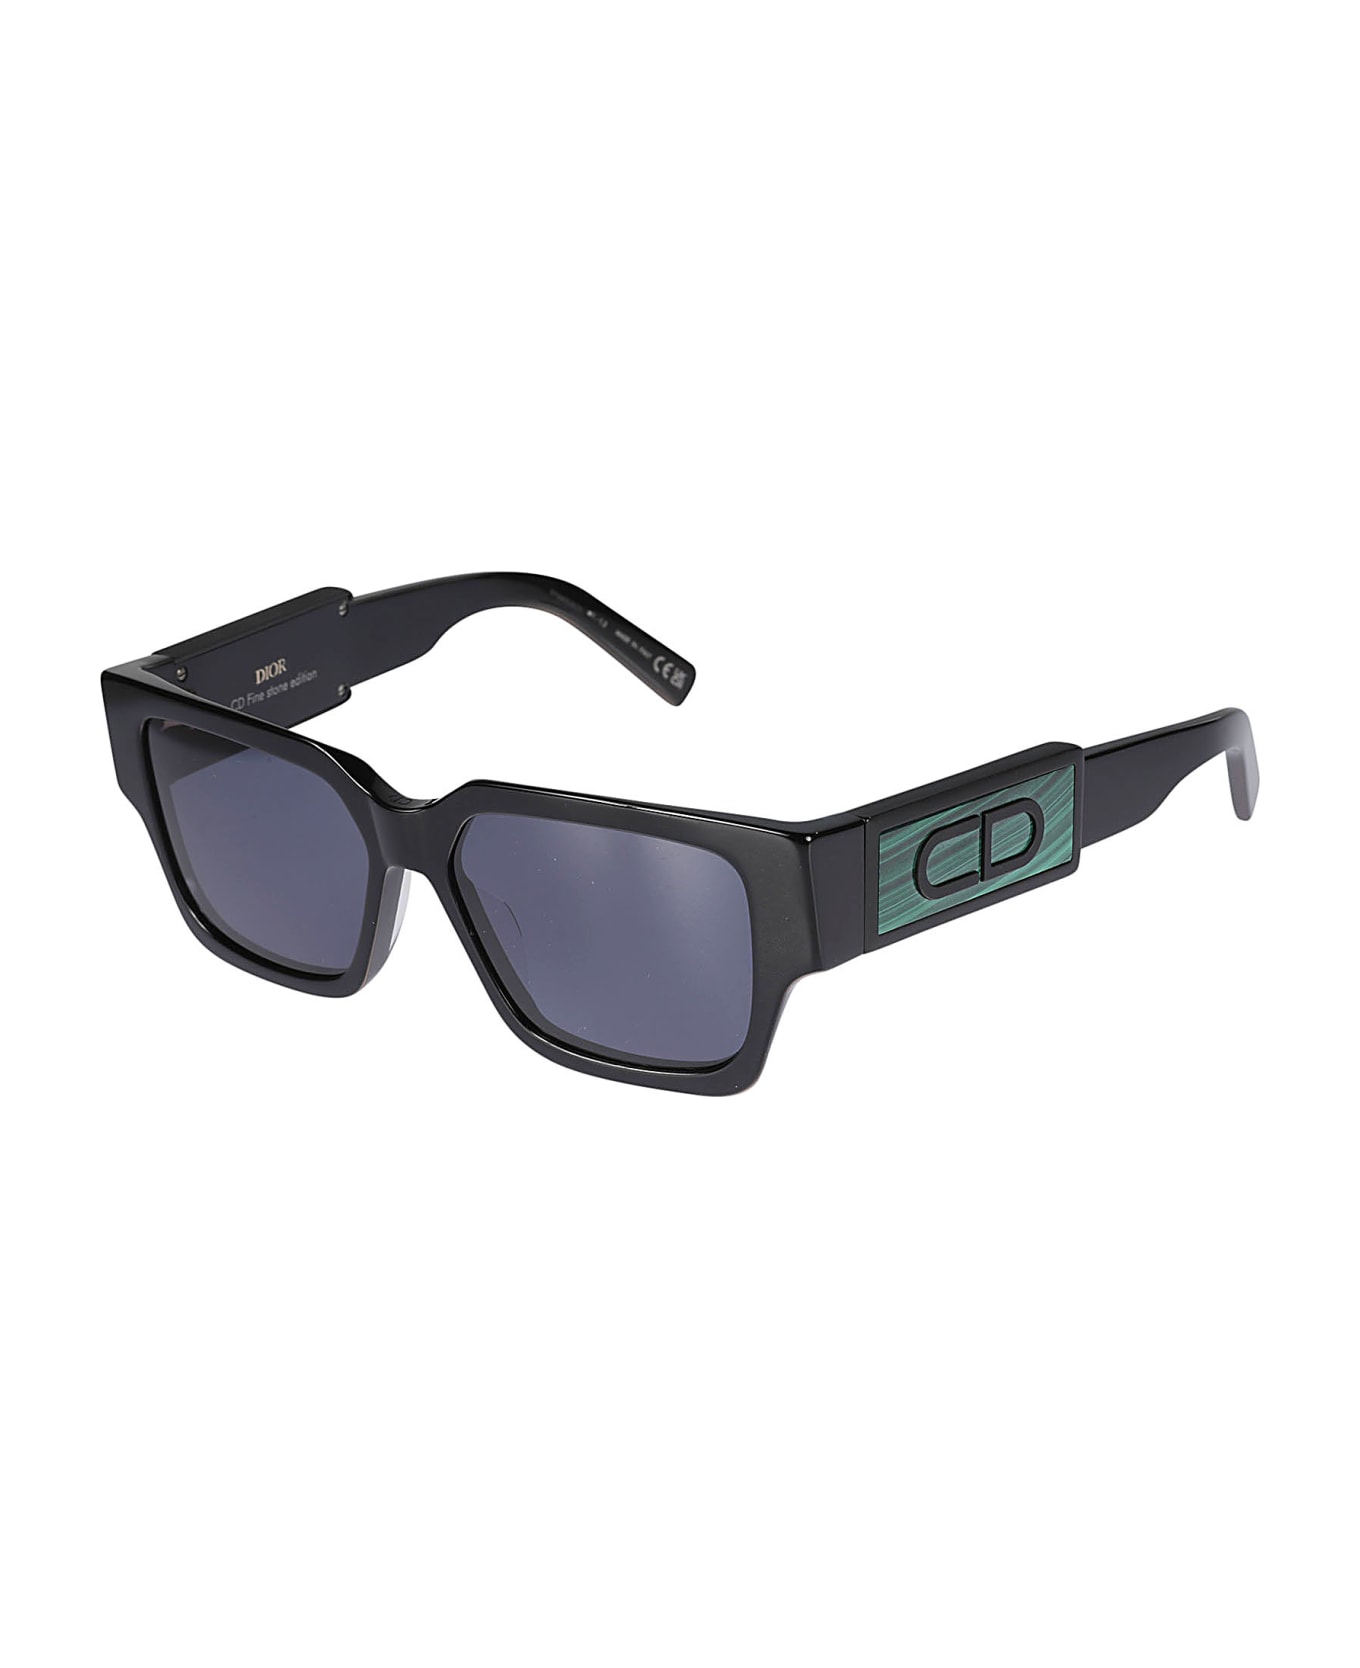 Dior Eyewear Cd Sunglasses - 16a0 サングラス